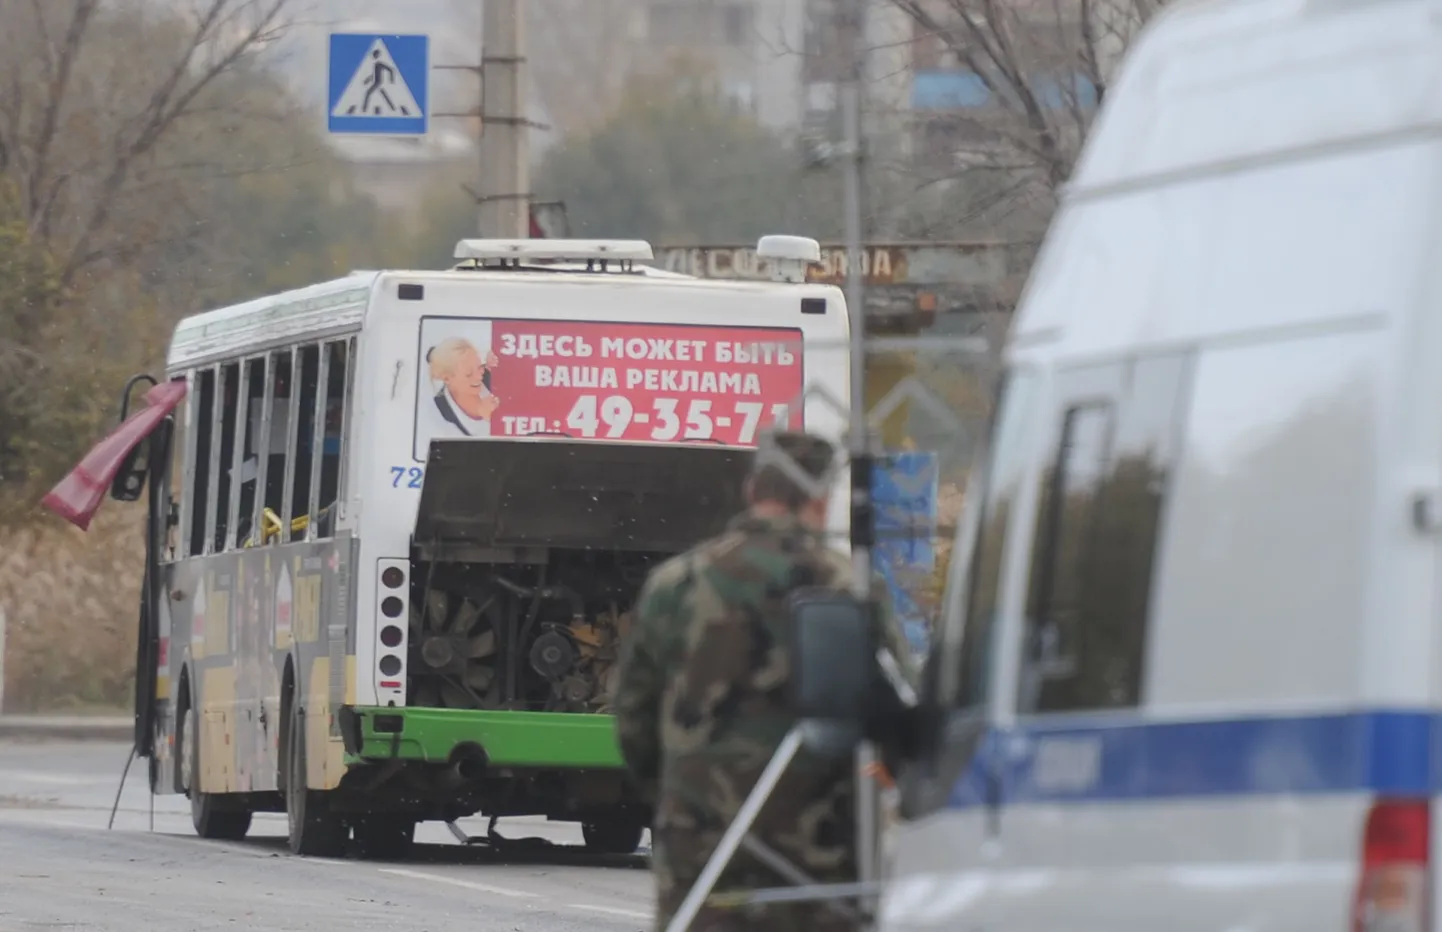 Мощность самодельной бомбы, взорванной дагестанской смертницей в волгоградском автобусе 21 октября, Следственный комитет предварительно оценил в 500-600 граммов в тротиловом эквиваленте.